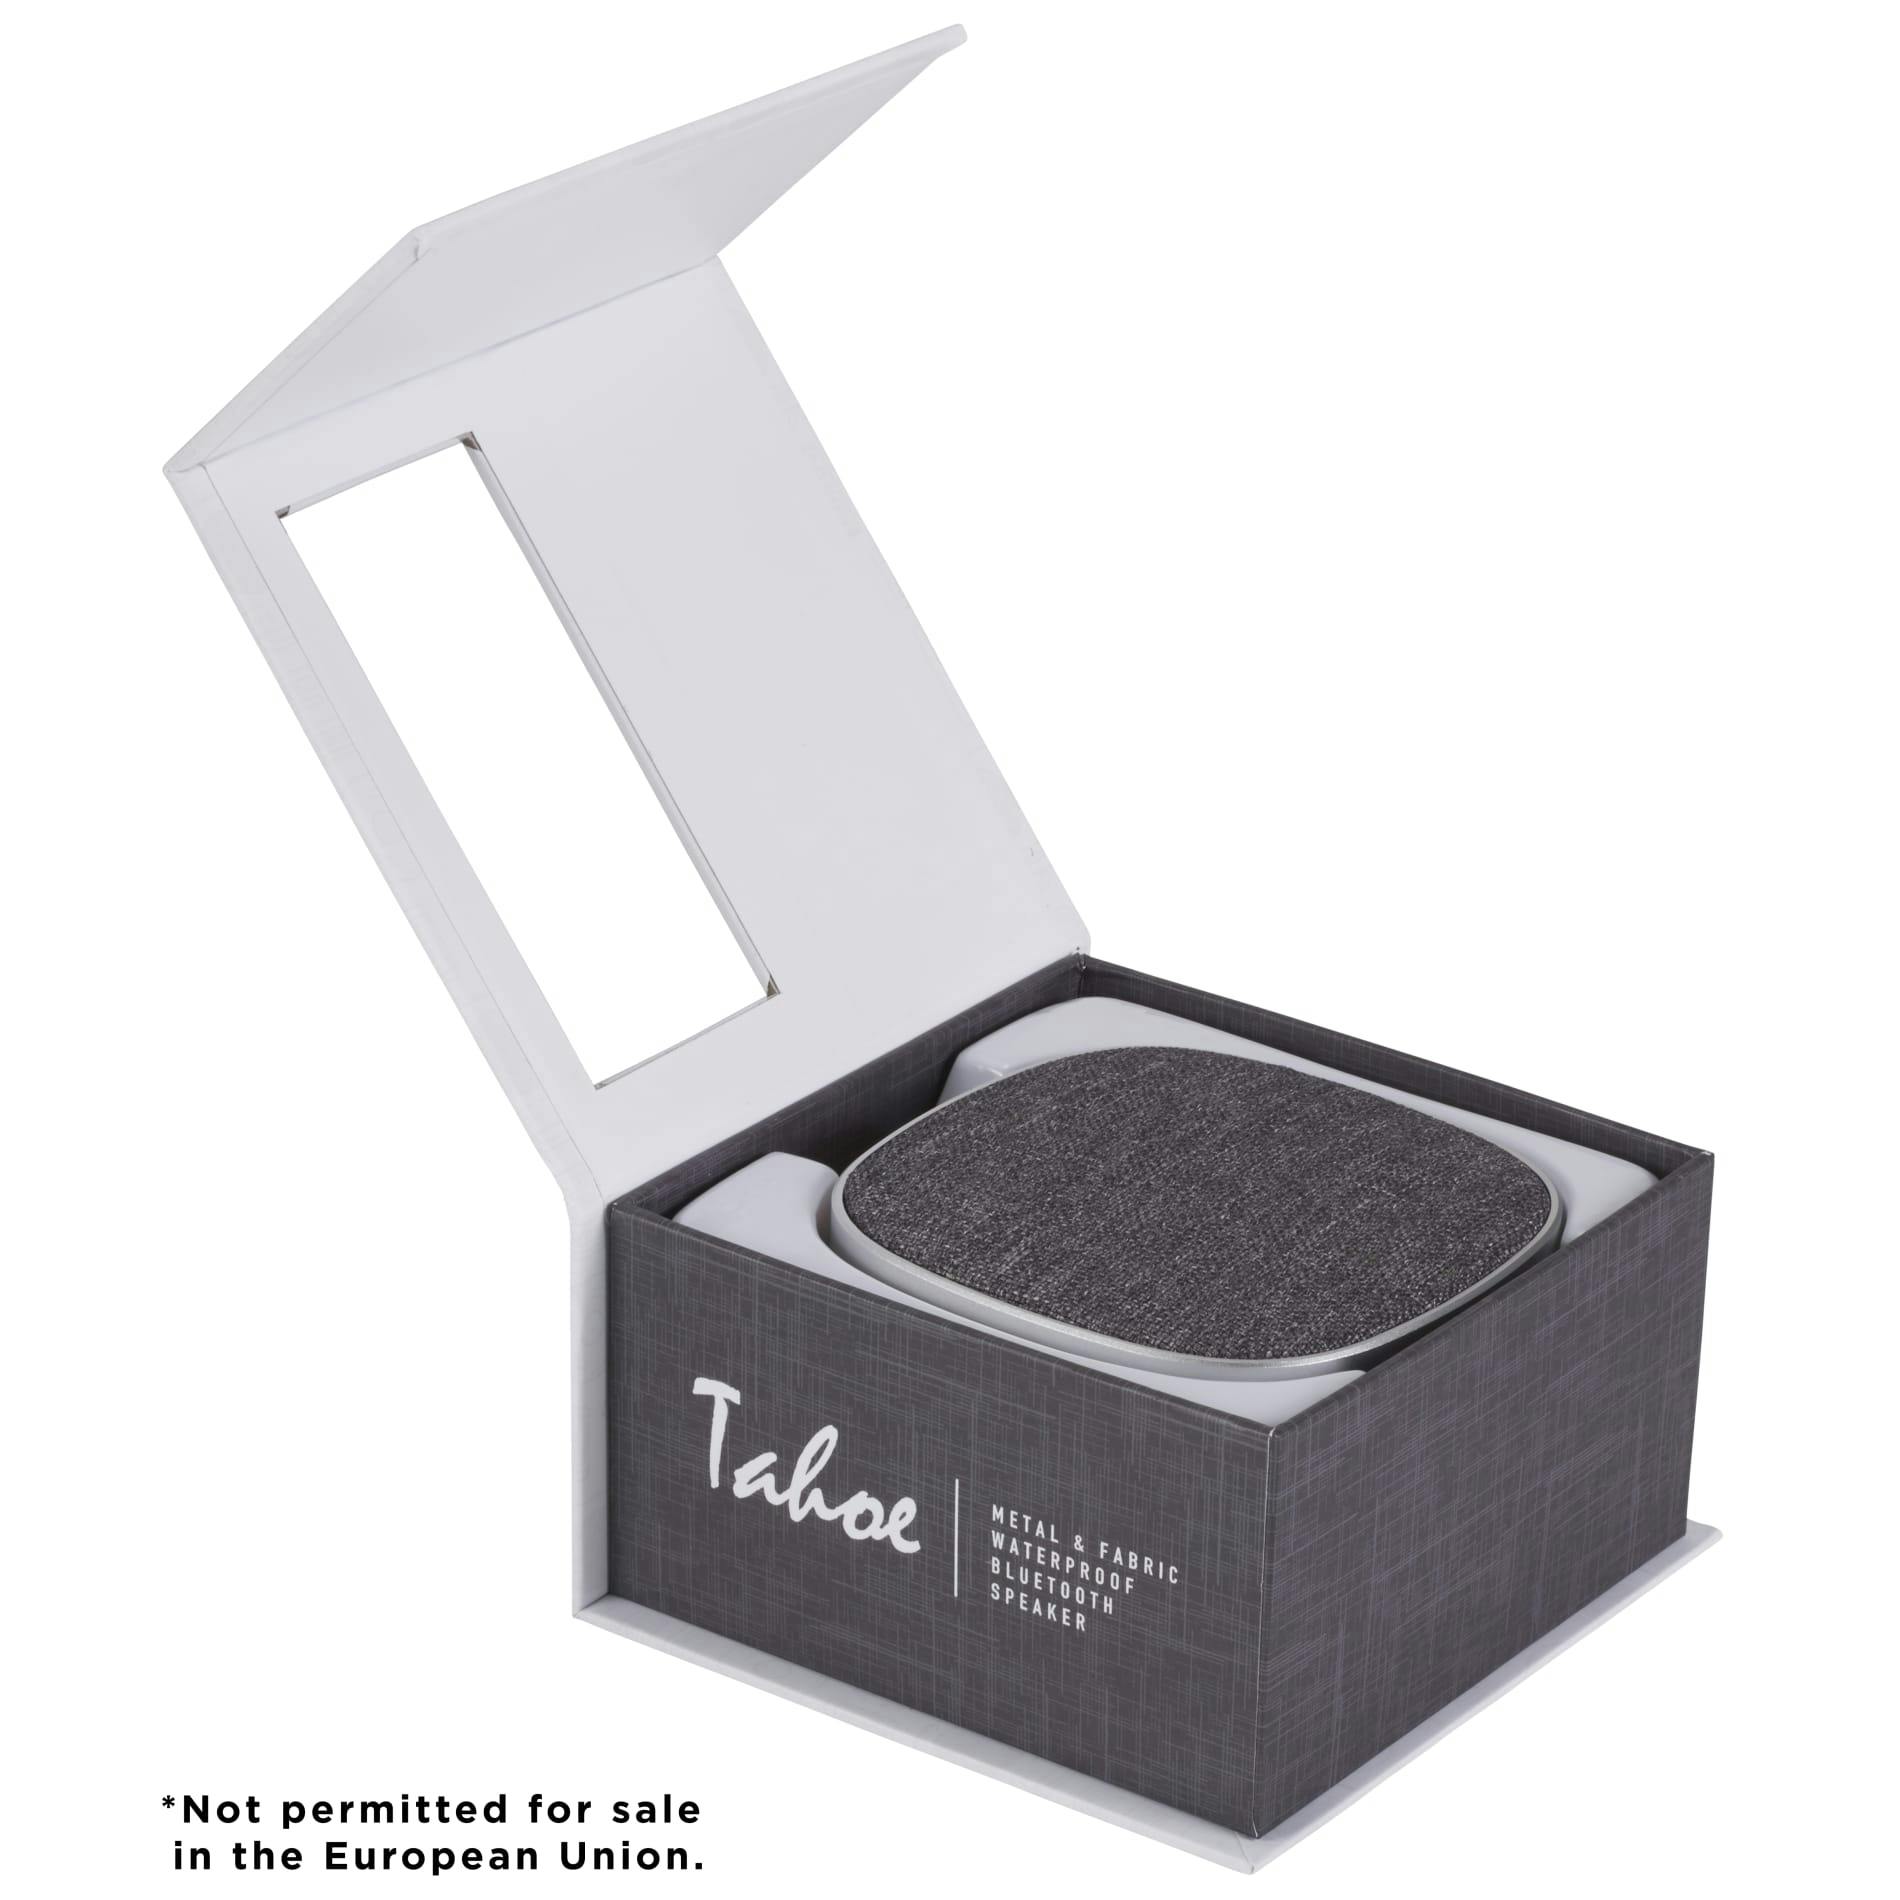 Tahoe Metal & Fabric Waterproof Bluetooth Speaker - additional Image 1